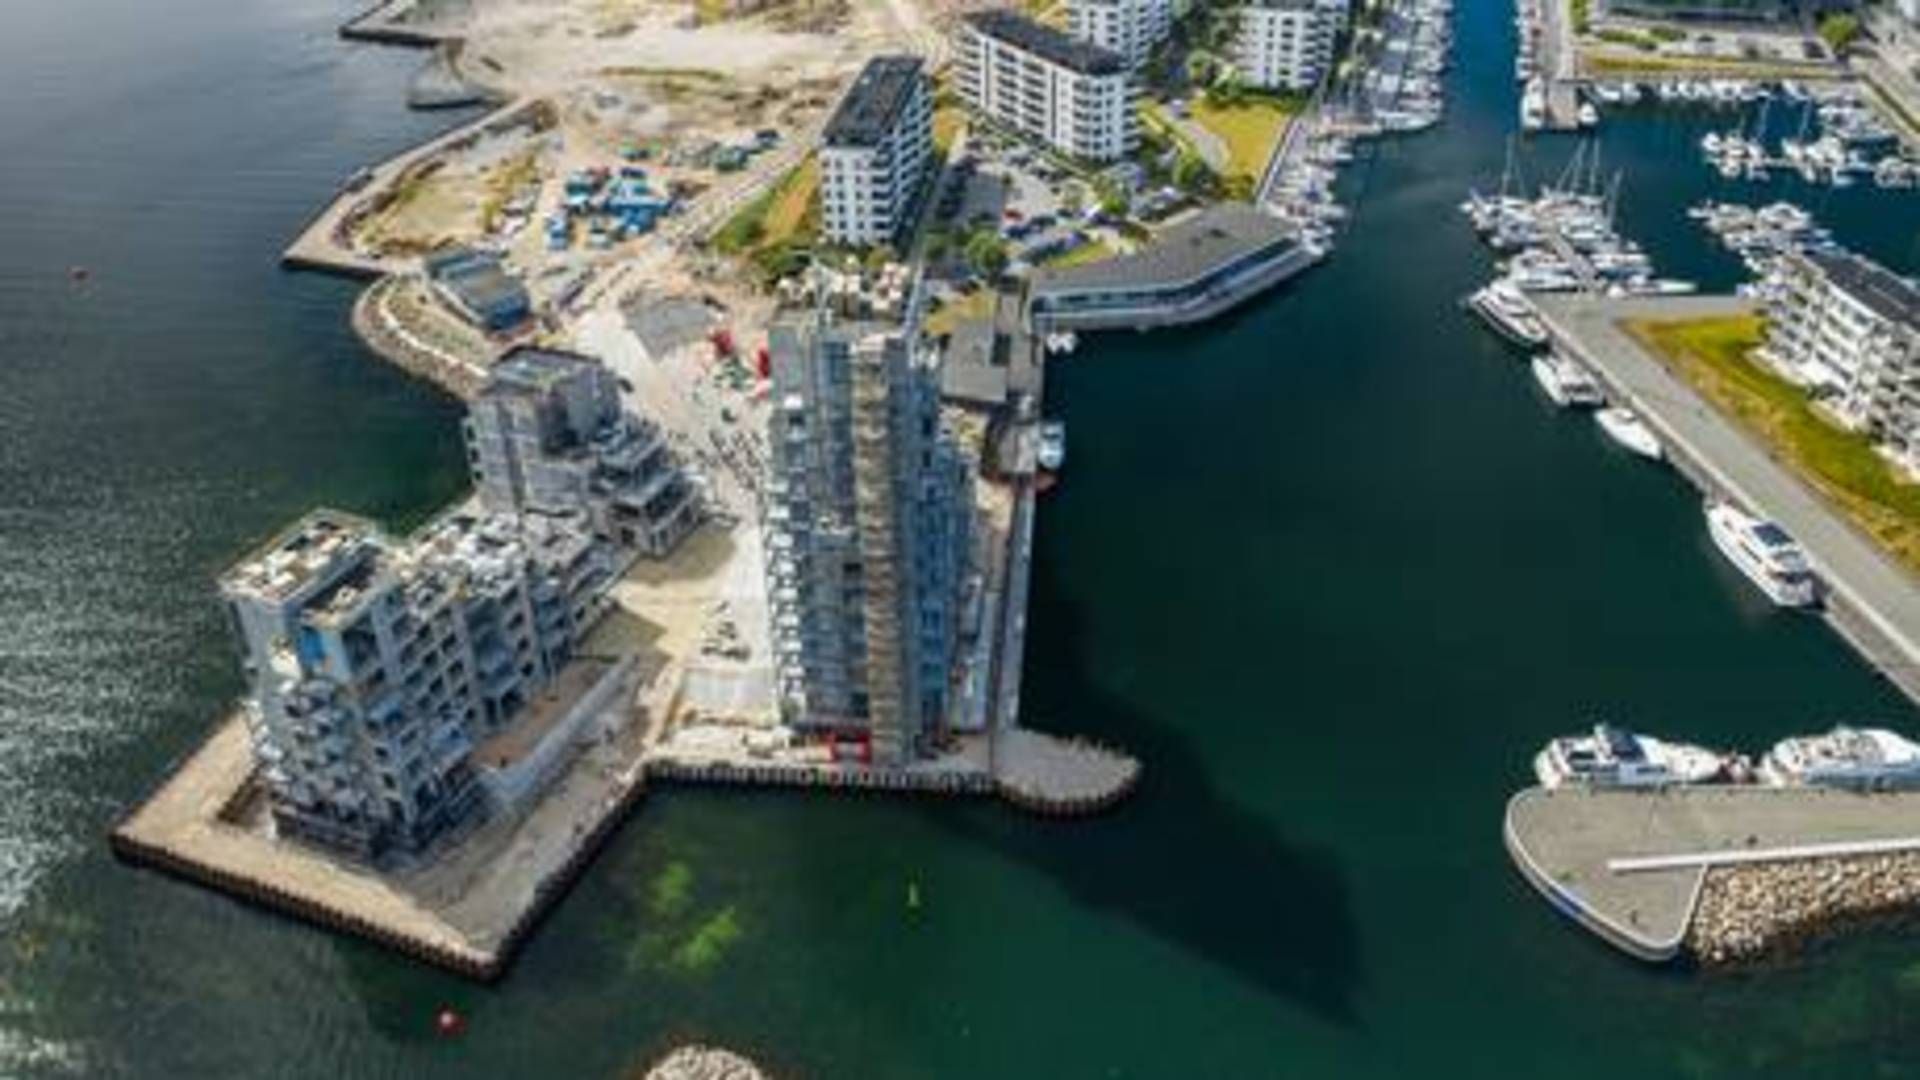 Danica har solgt 20 ud af 50 lejligheder i de såkaldte kysthuse på Tuborg Strandeng, oplyser Michael Nielsen, der er topchef hos pensionsinvestoren. Boligerne skal stå klar til januar næste år. | Foto: Danica Ejendomme